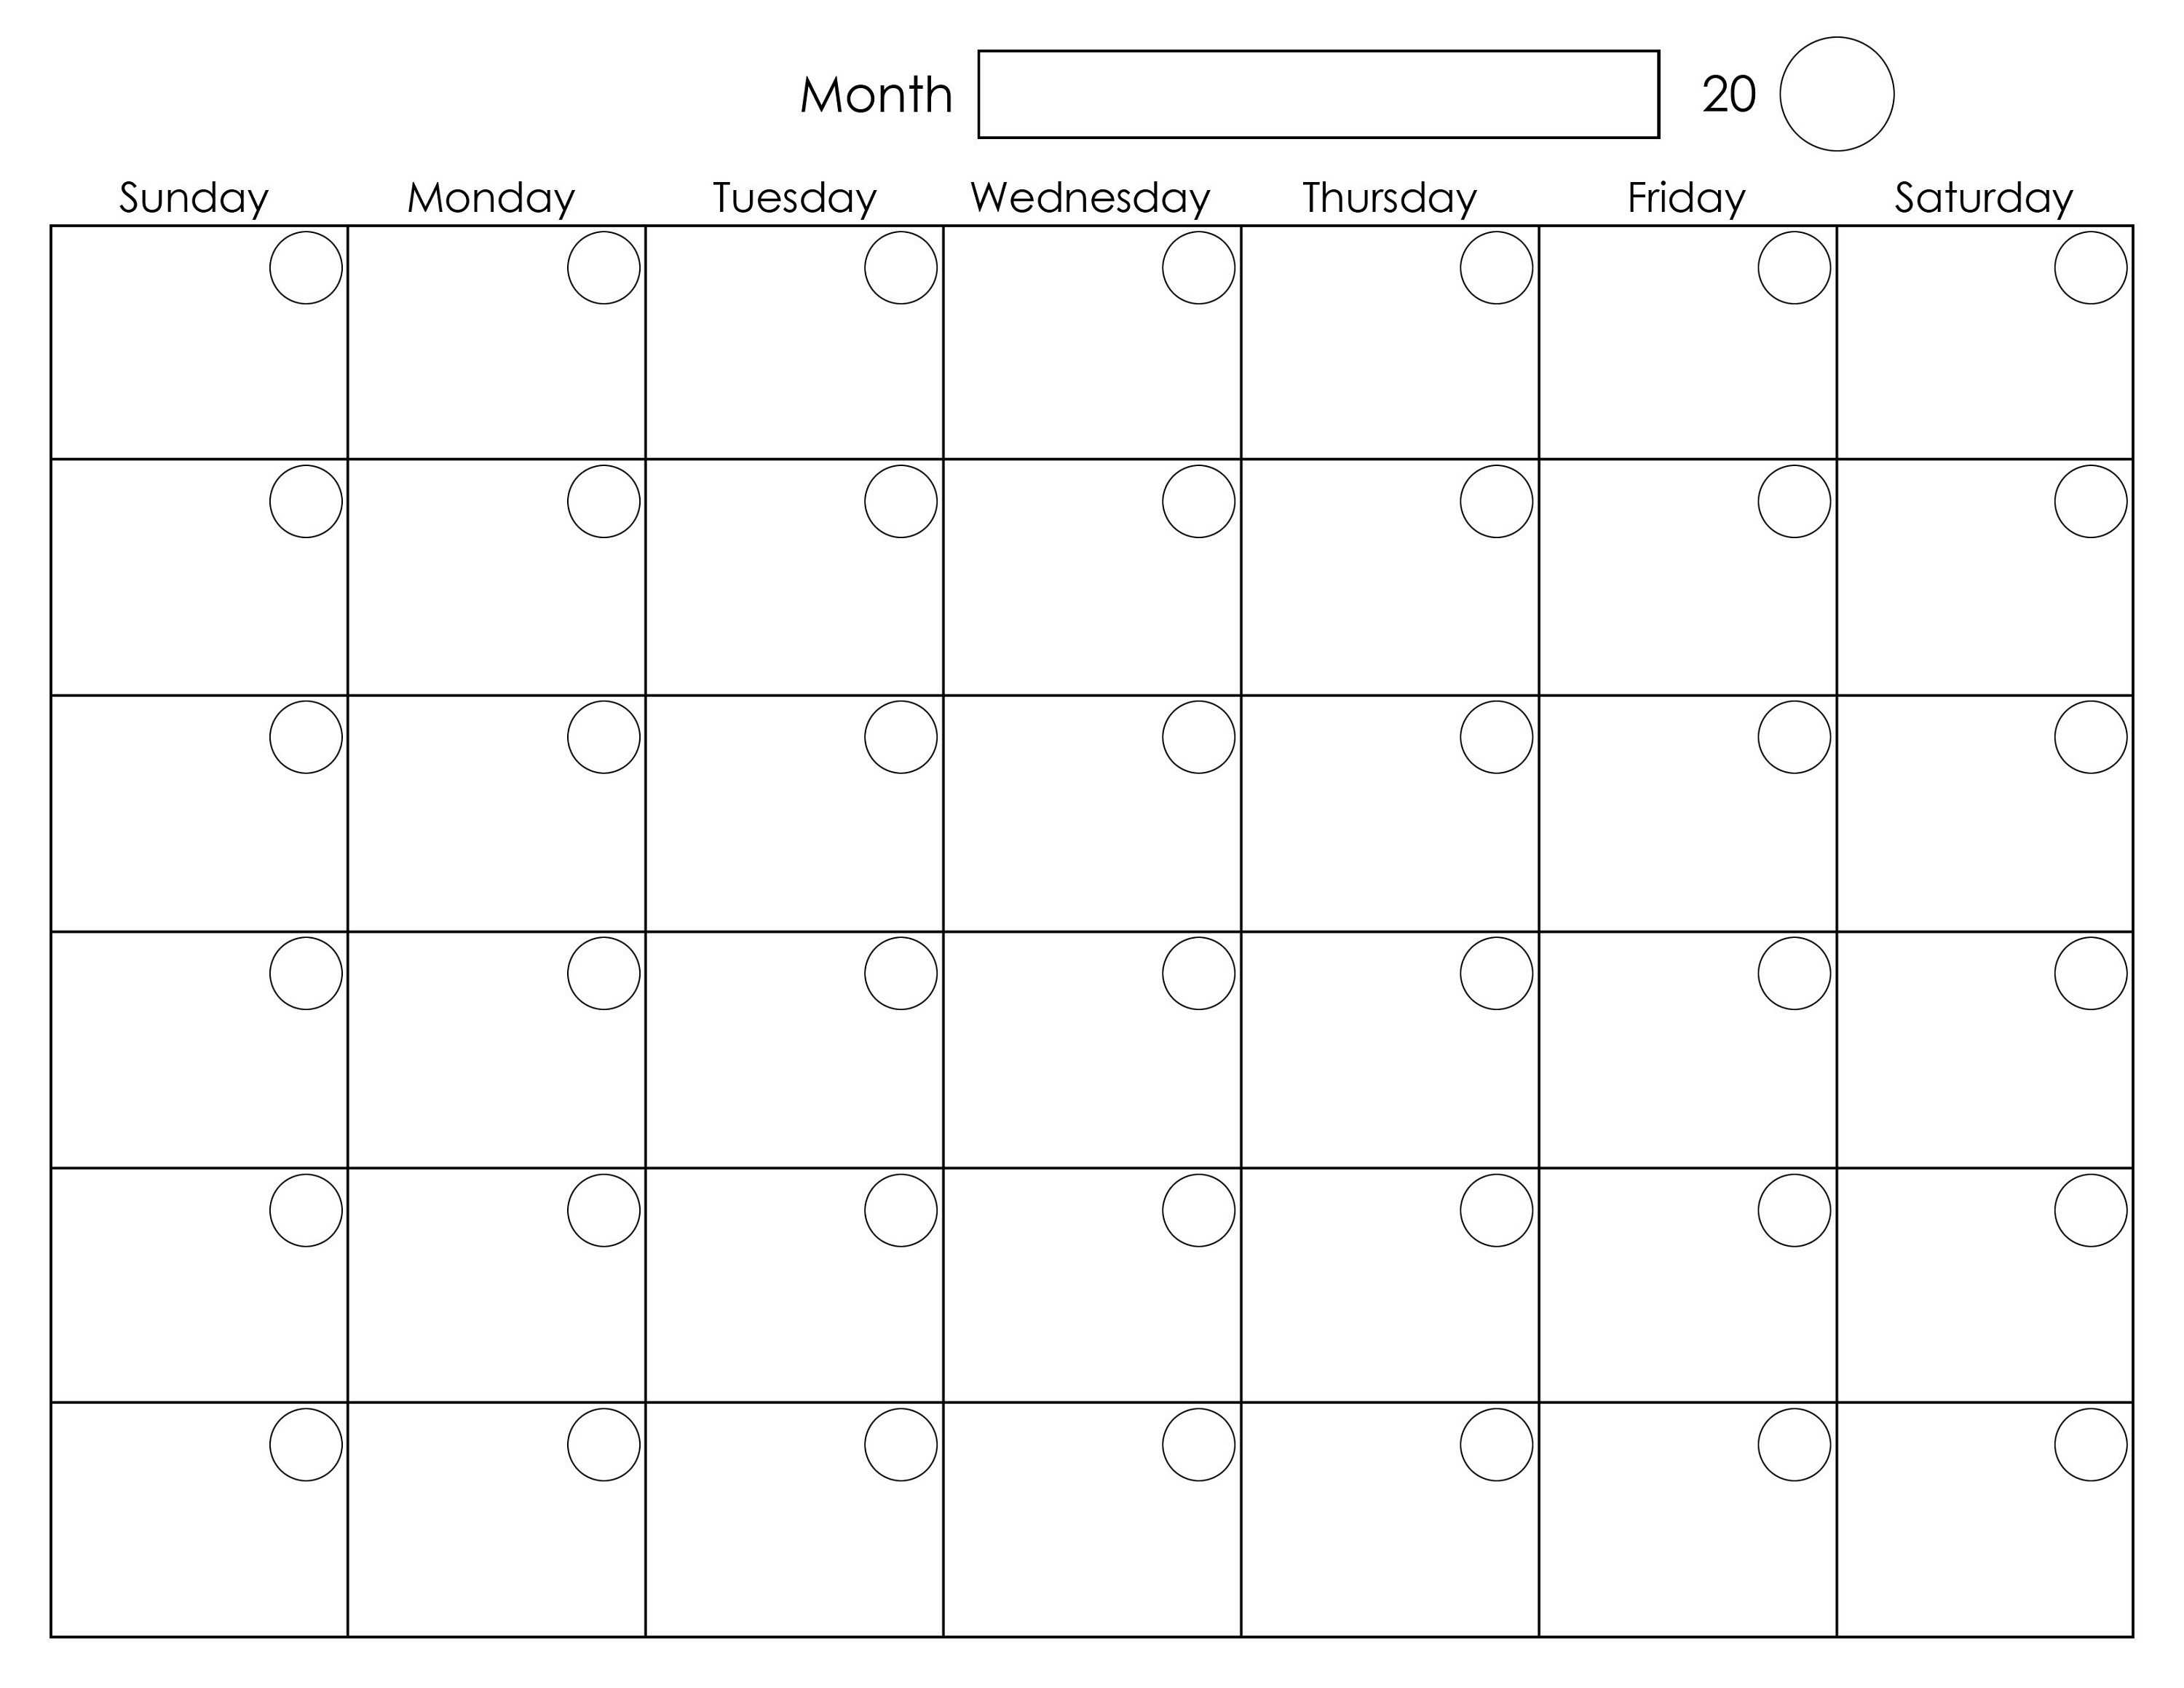 How Do I Print A Monthly Calendar